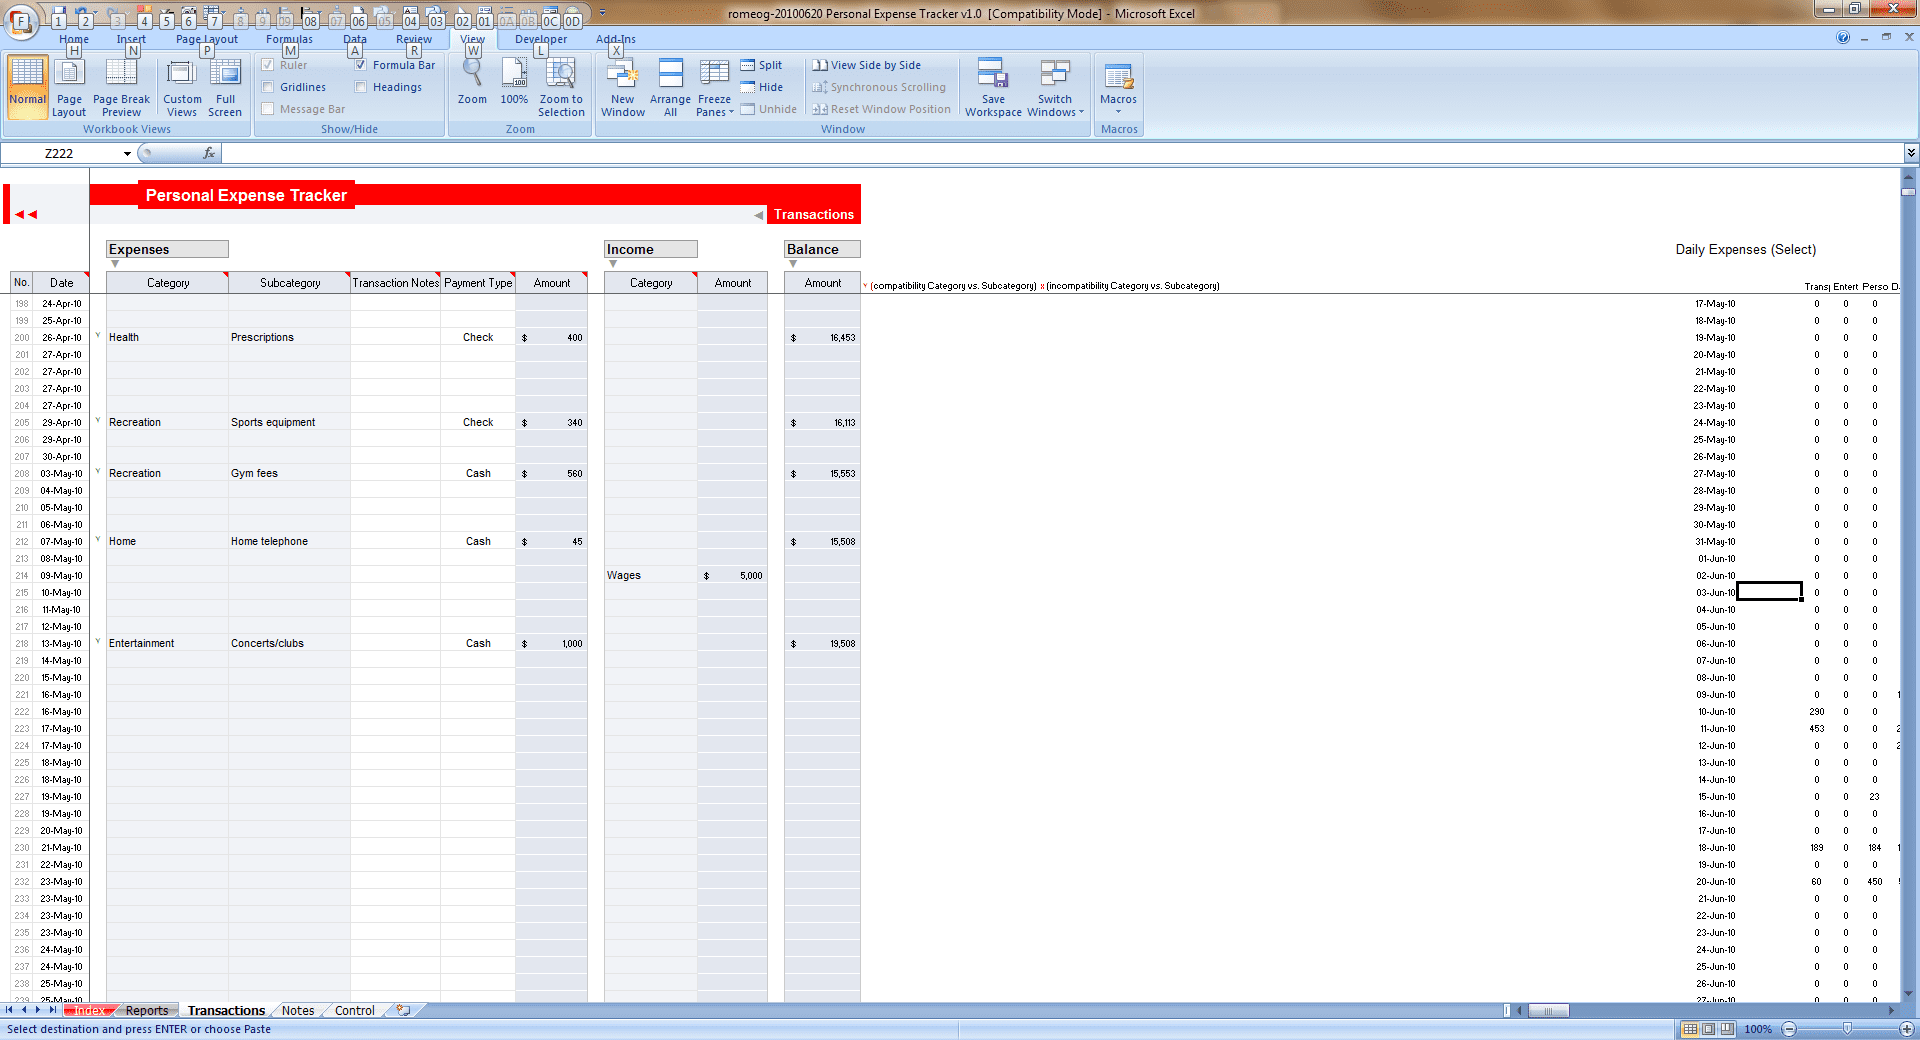 Monthly Bills Spreadsheet Template Excel